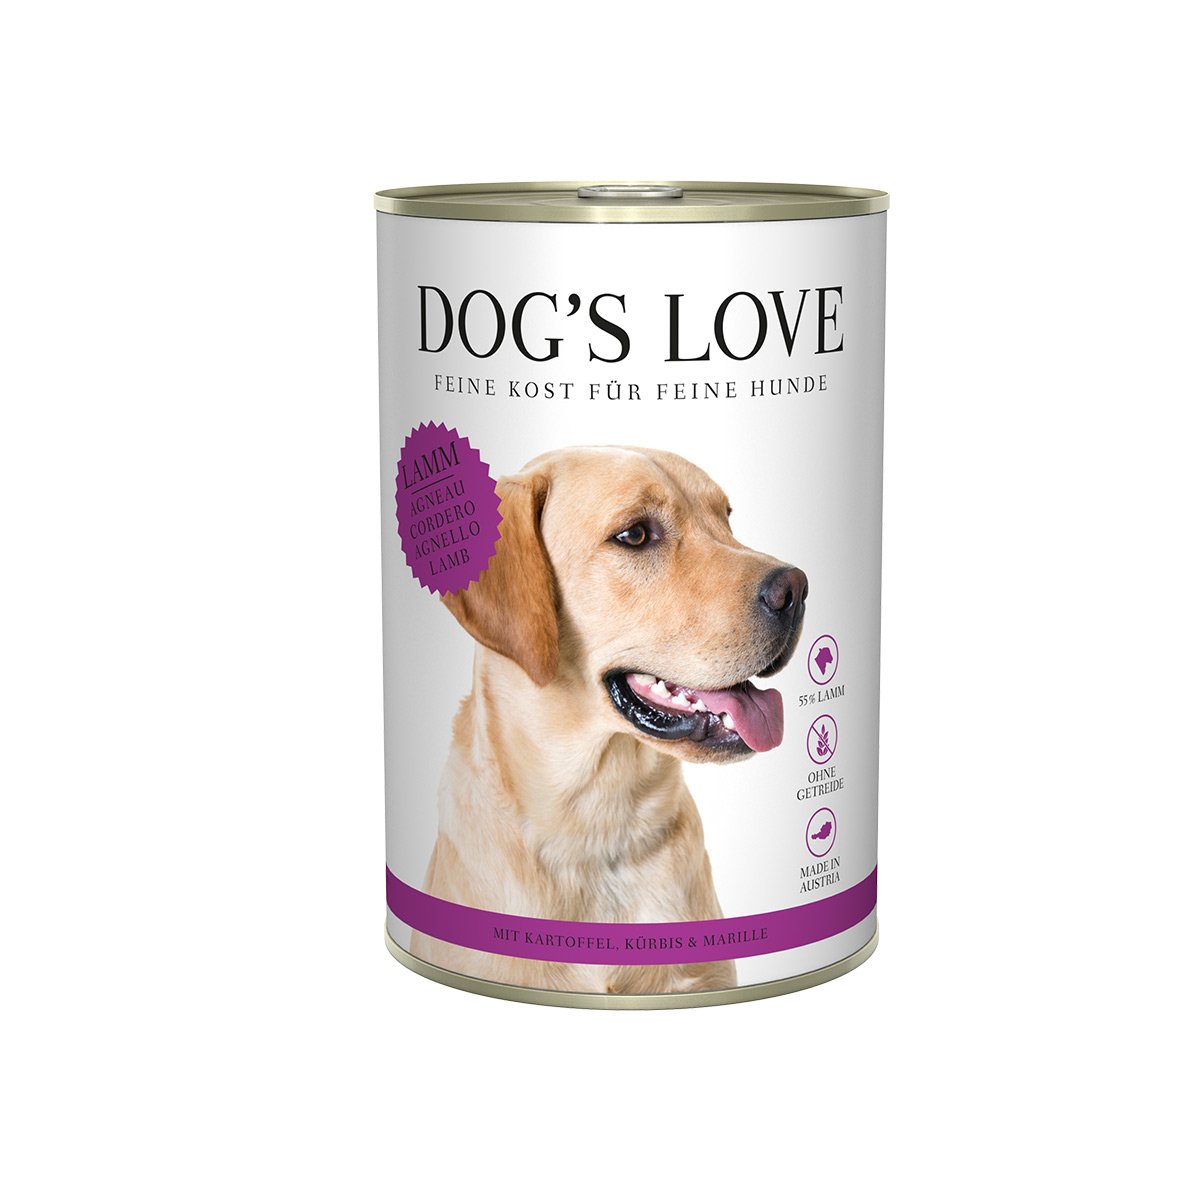 Dog's Love Classic jehněčí maso s bramborami, dýní a meruňkou 12x400g